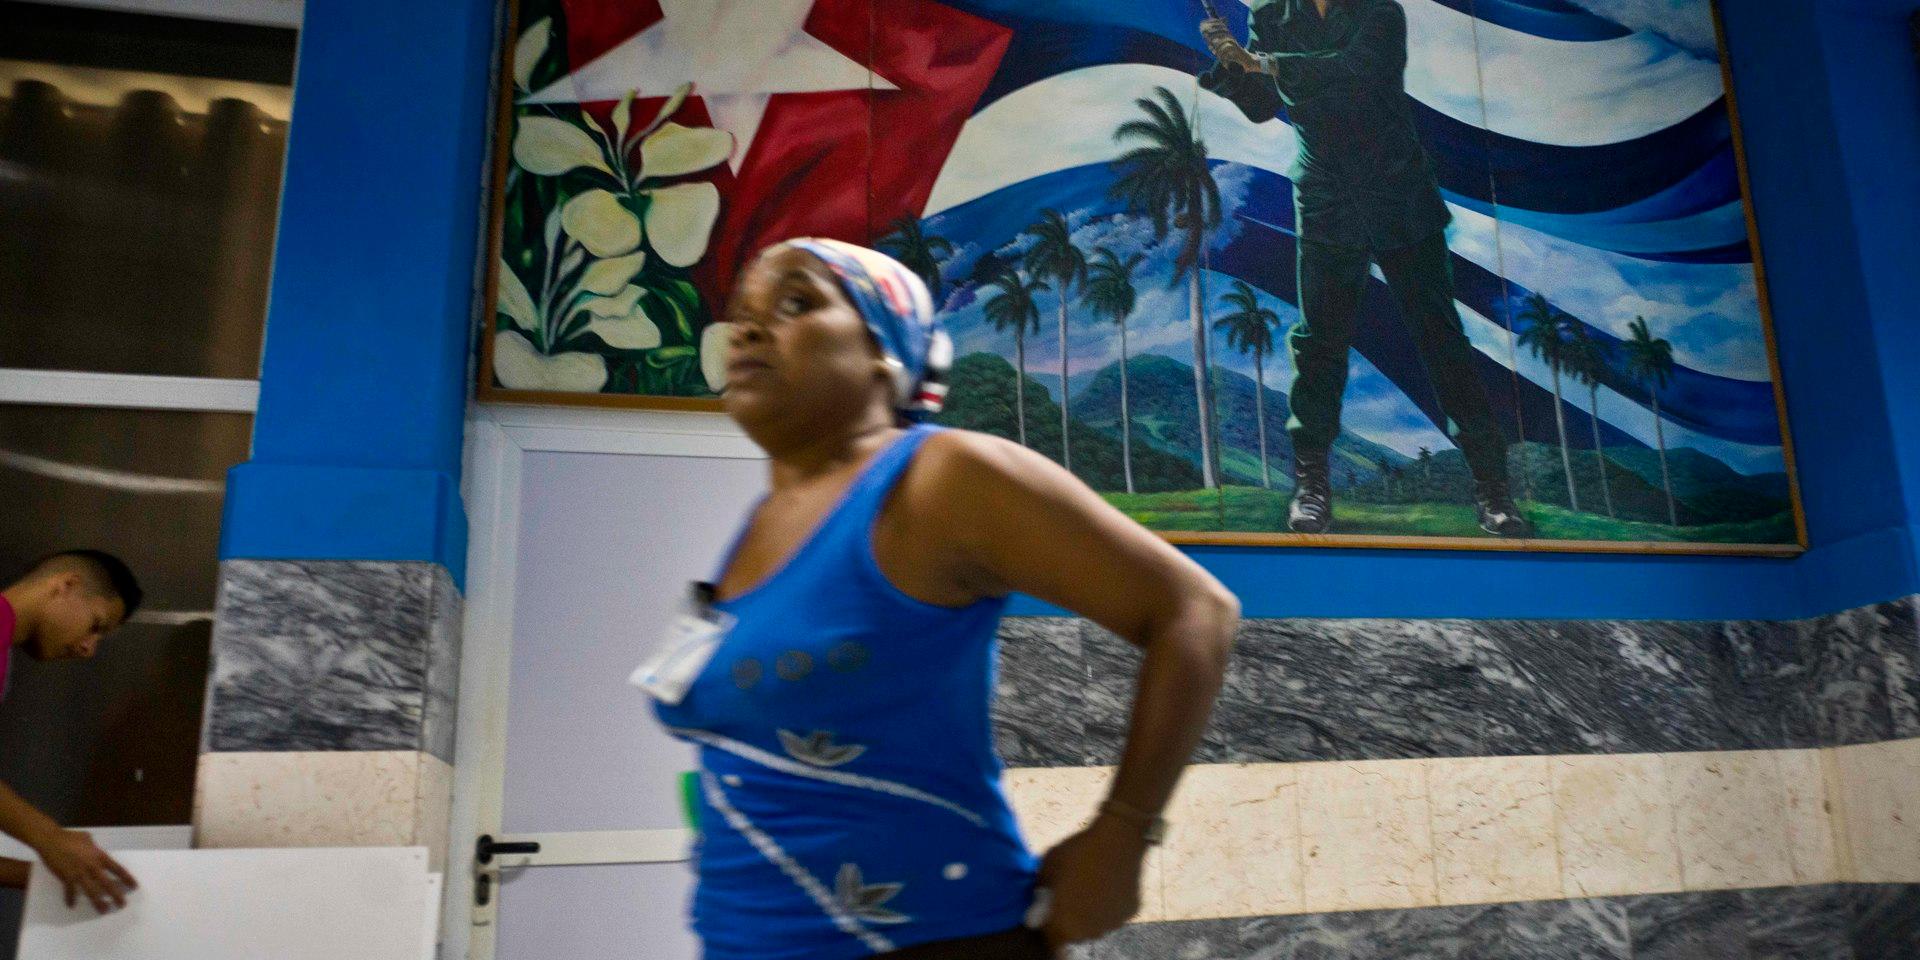 En väggmålning i Havanna föreställande Fidel Castro som spelar baseboll. ARkivbild.